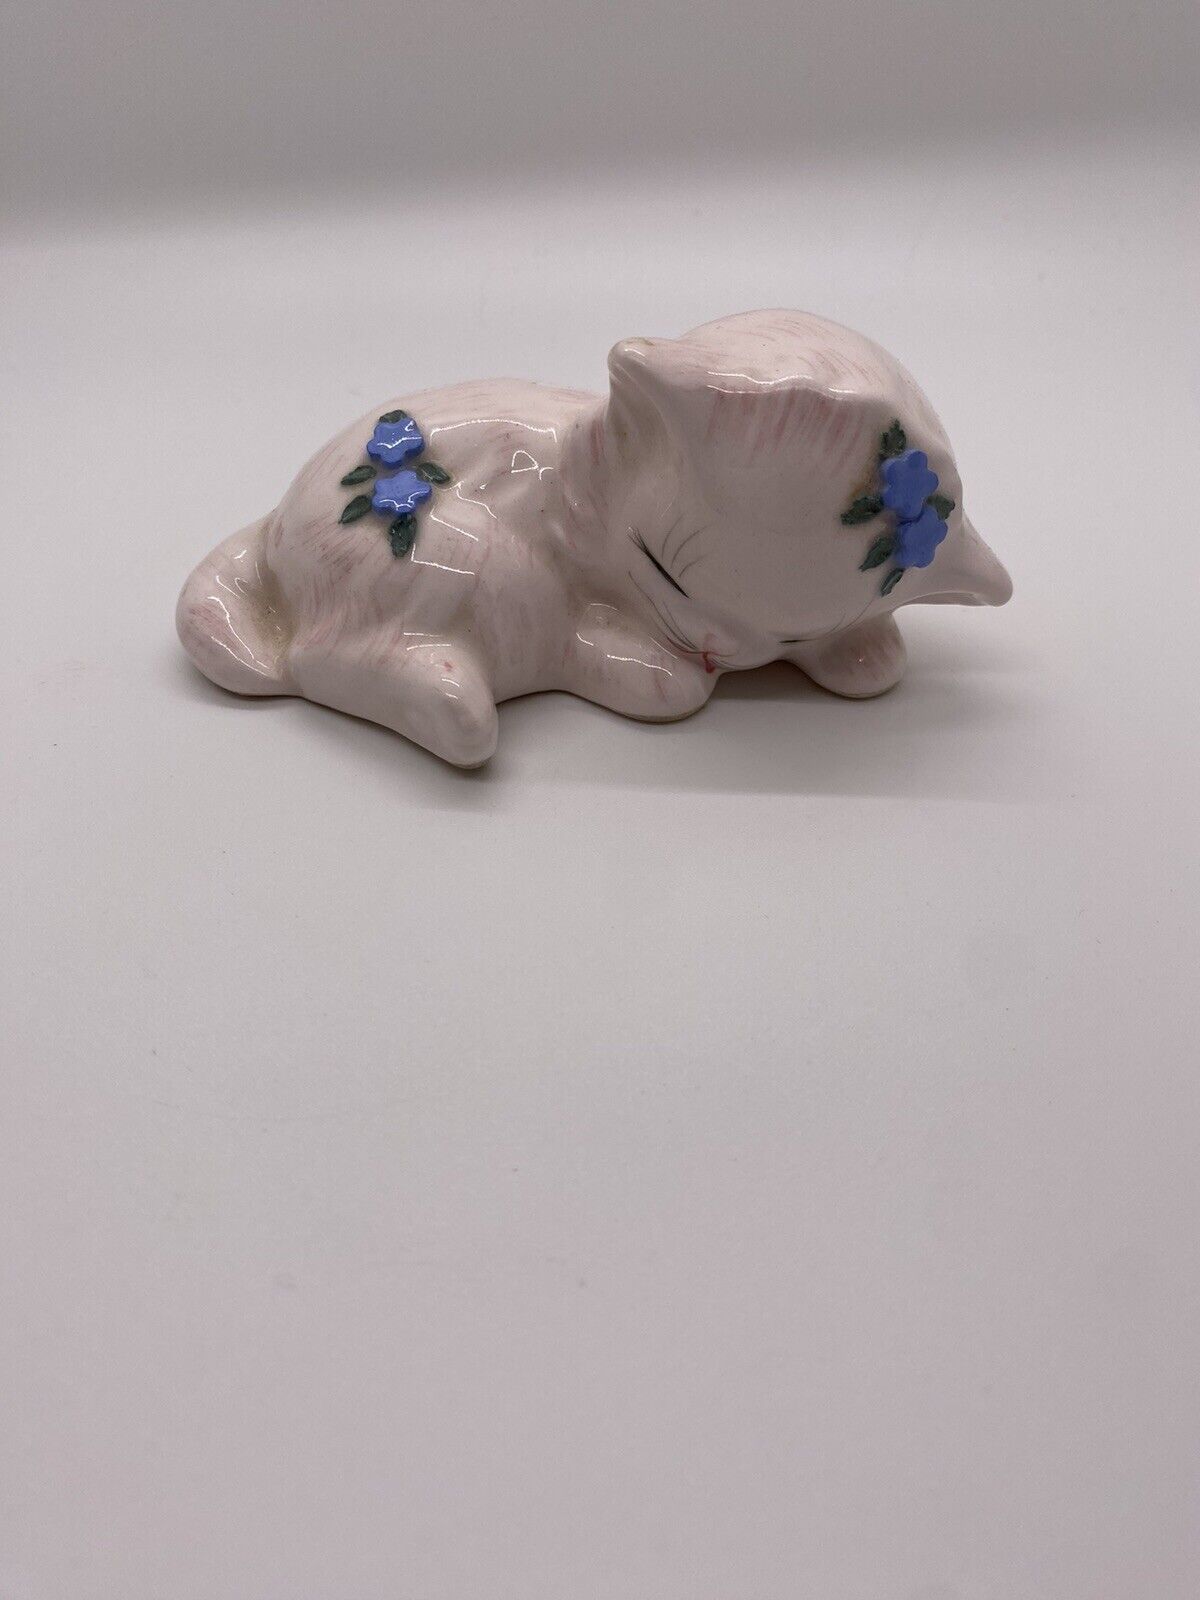 Vtg Lefton Ceramic Figurine Kitten Cat Knapping White-Pink Tint Blue Flowers